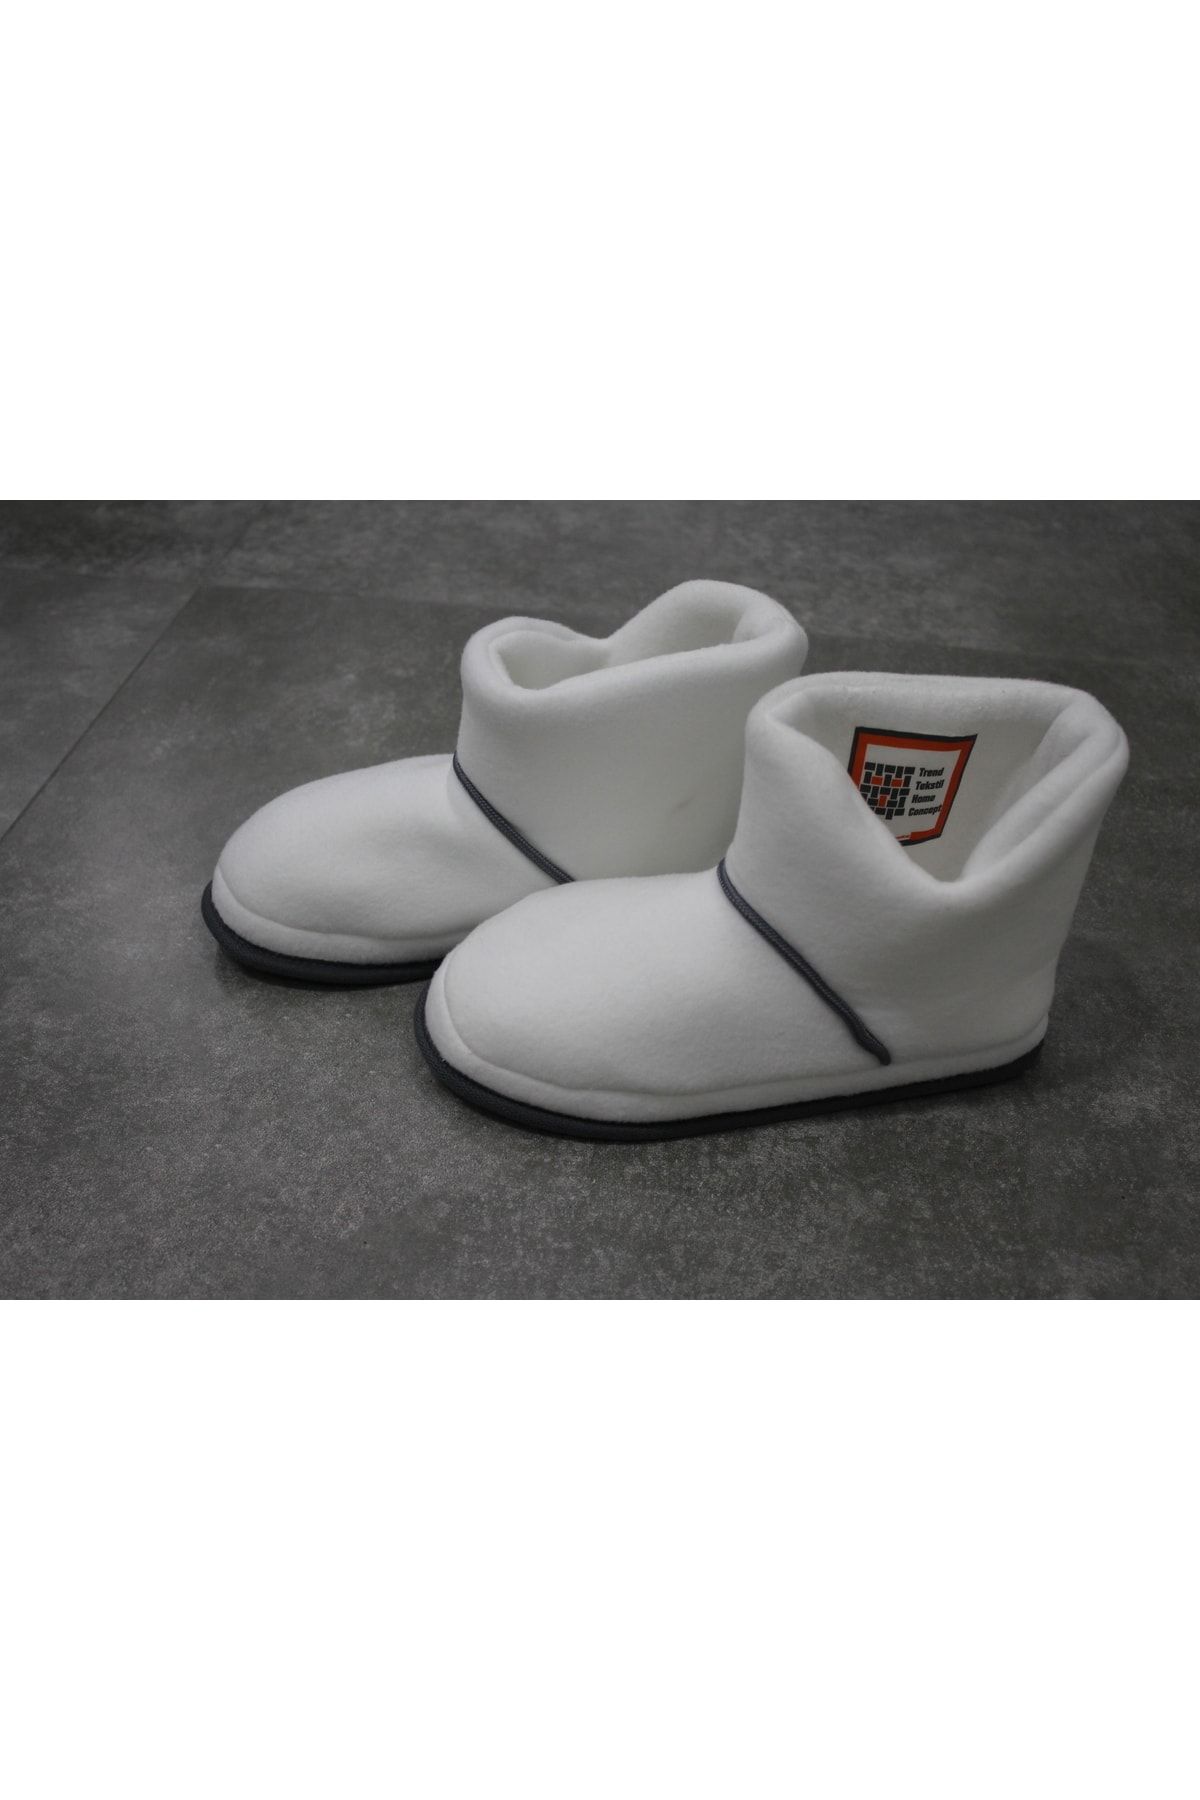 Trend Home Concept - Kadın Panduf - Ev Botu - Ev Ayakkabısı